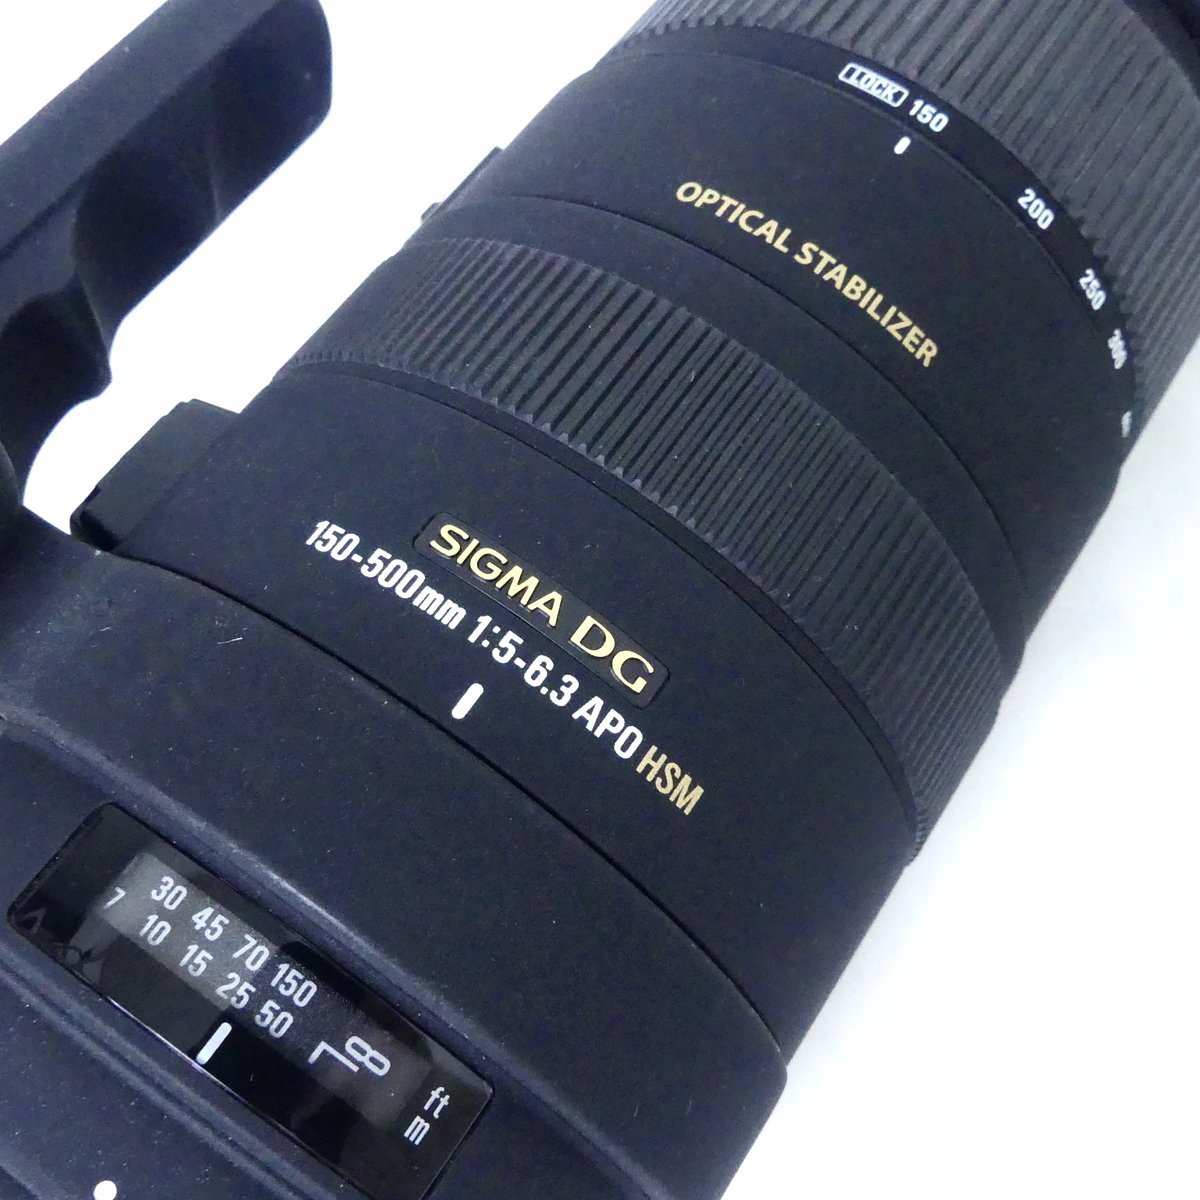 SIGMA シグマ DG 150-500mm F5-6.3 APO HSM ニコン カメラレンズ 望遠レンズ USED /2401C_画像2